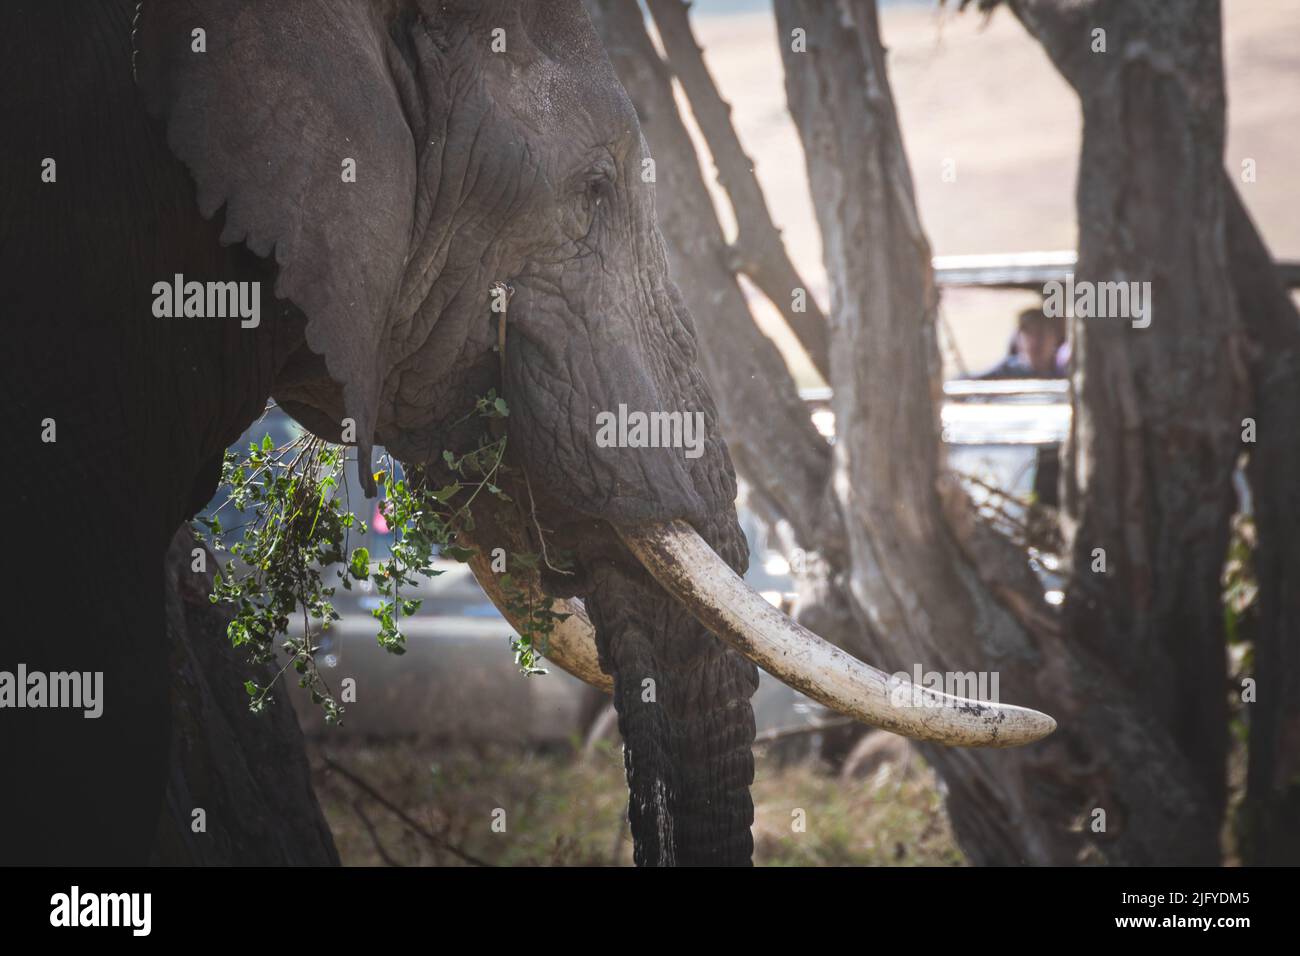 Close -up isolato grande elefante maschio adulto (Elephantidae) nella zona di conservazione delle praterie del cratere di Ngorongoro. Concetto di safari naturalistico. Tanzania. AF Foto Stock